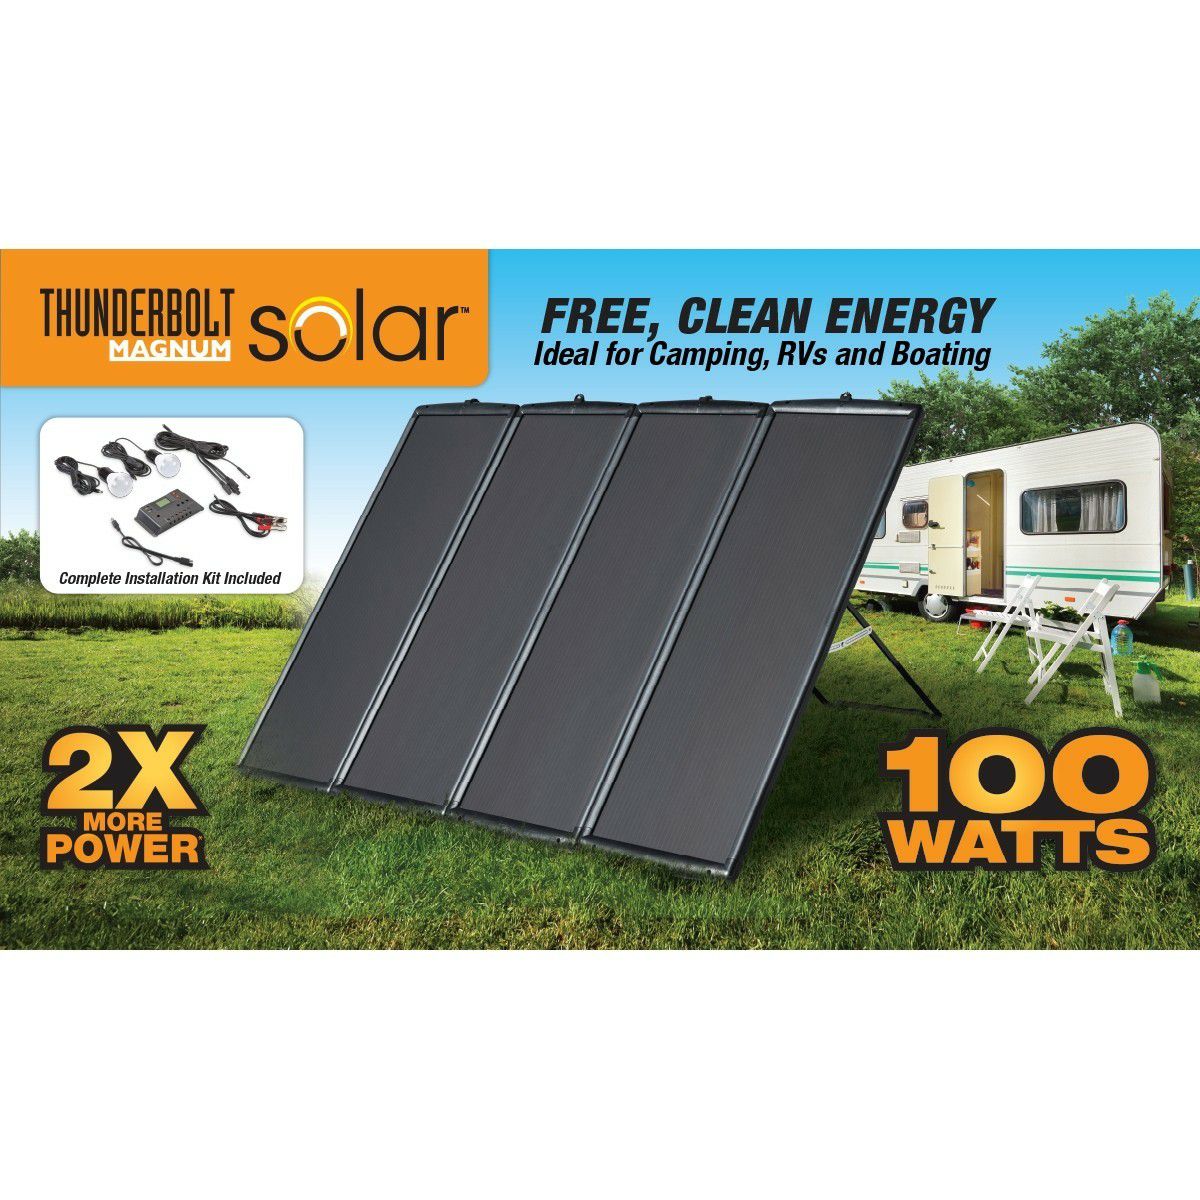 100 Watt Harbor Freight solar panel kit